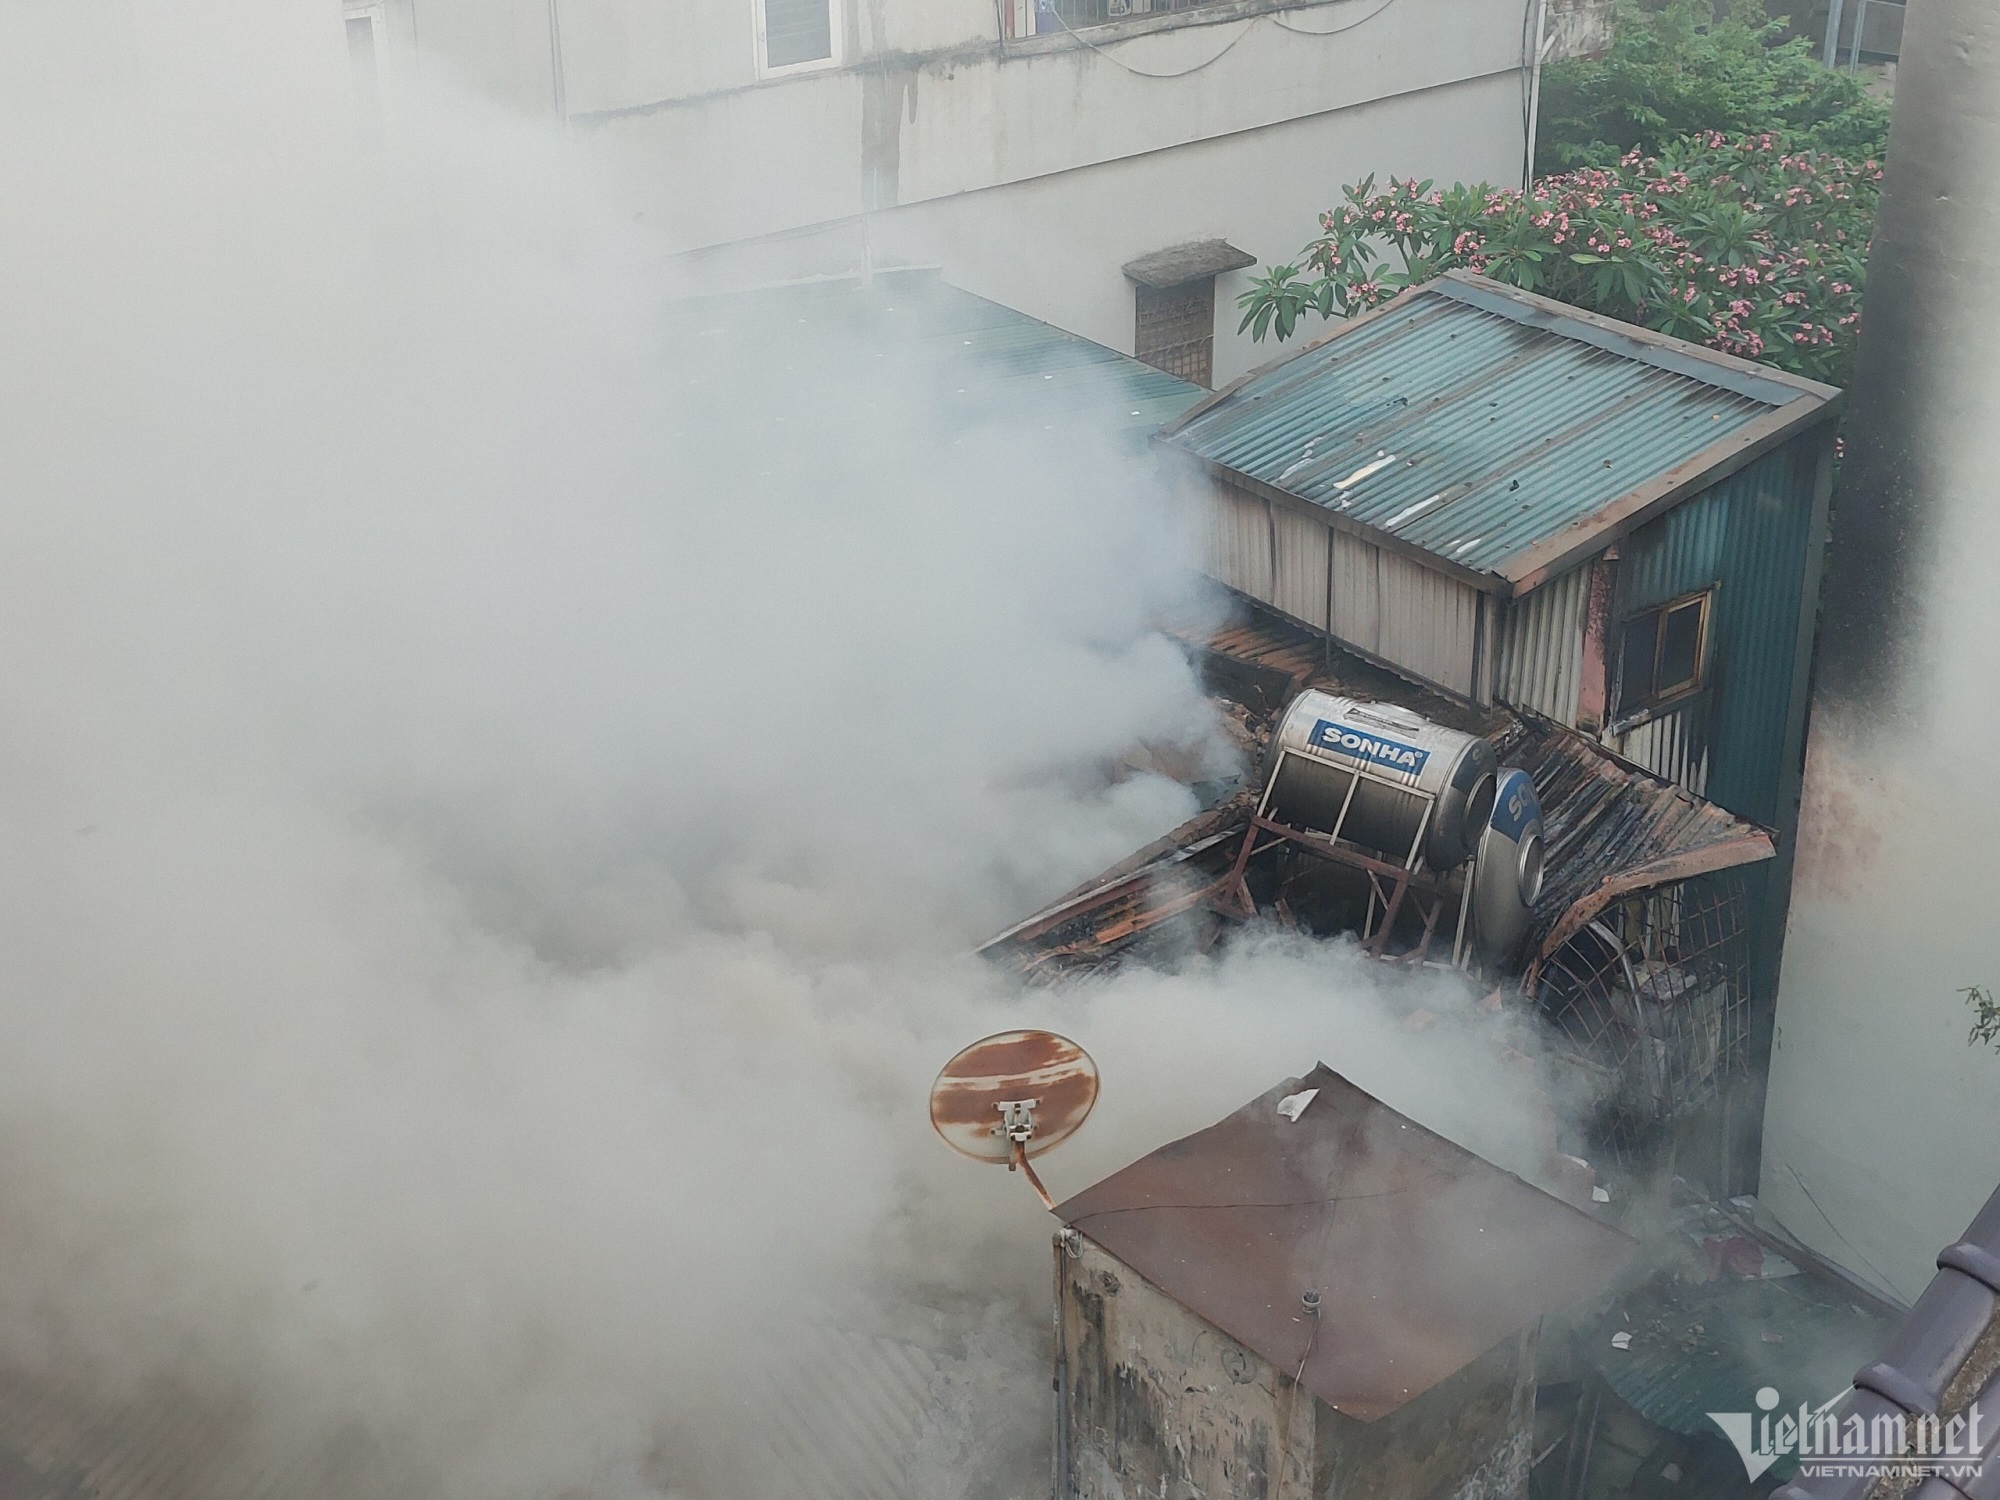 Hiện trường vụ nhà 2 tầng trong ngõ sâu ở Hà Nội bốc cháy ngùn ngụt - Ảnh 3